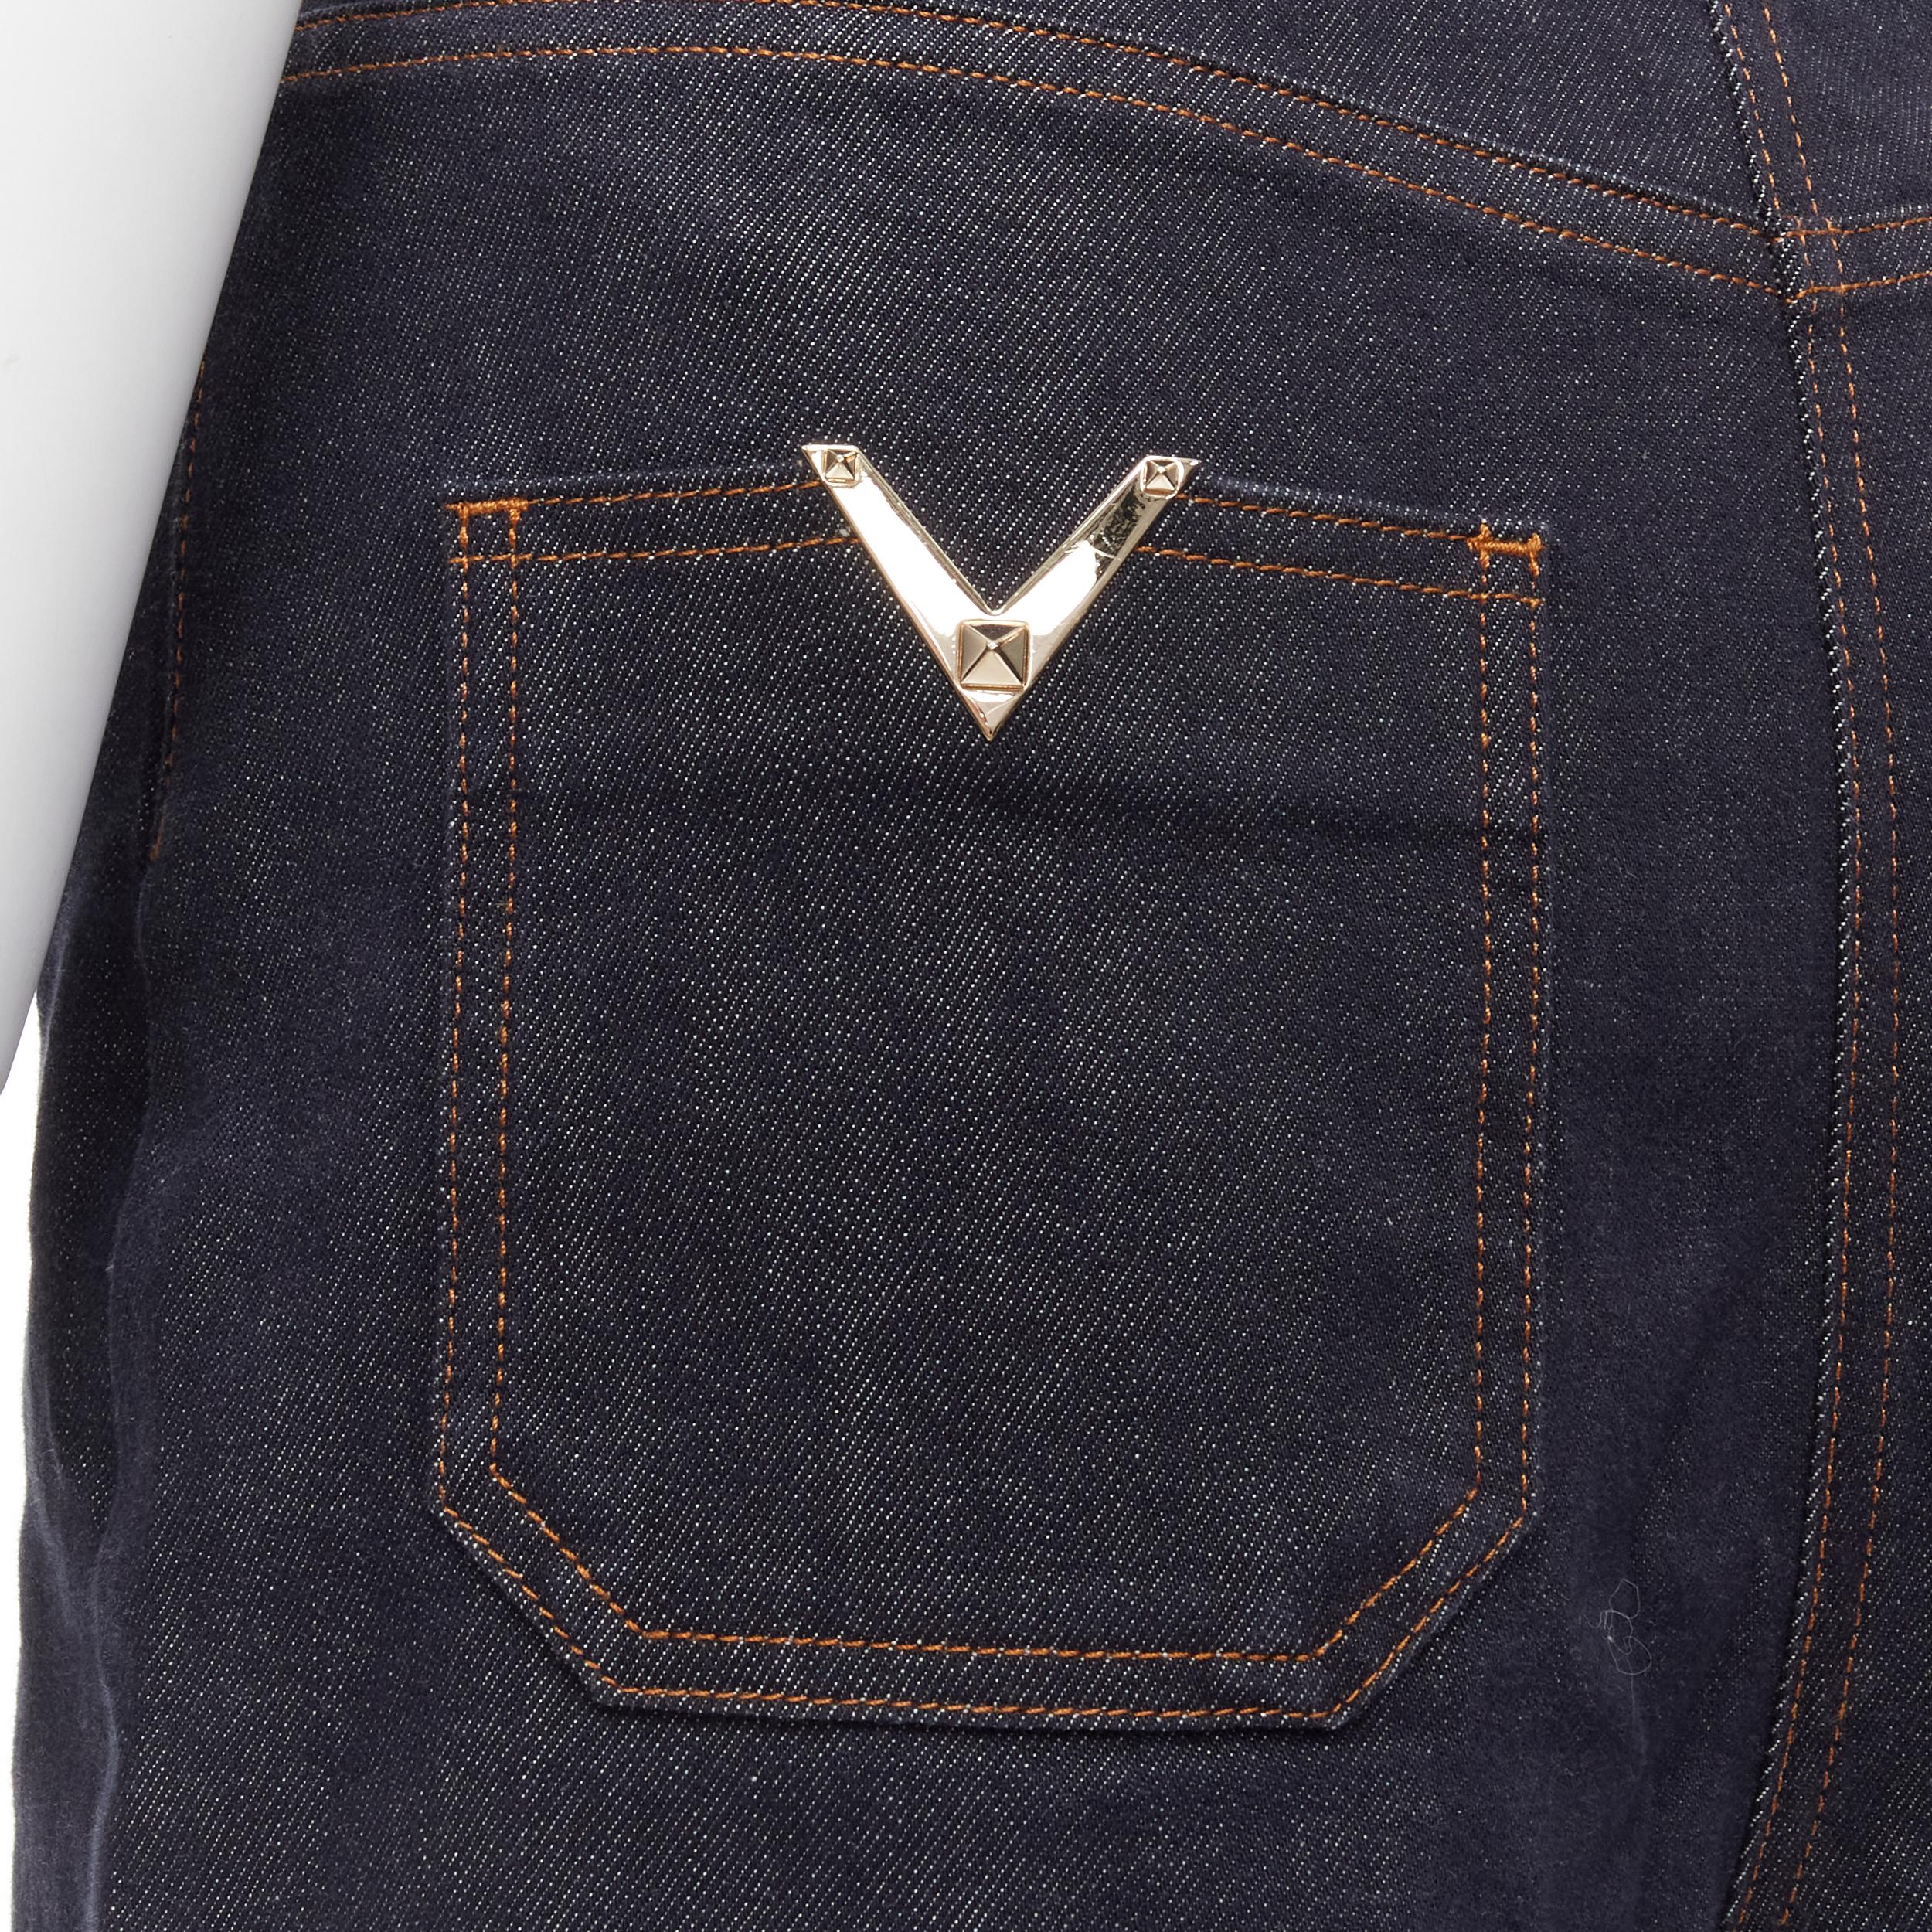 VALENTINO 2018 V Rockstud logo pocket dark indigo blue denim wide leg culotte jeans 
Reference: MELK/A00088 
Brand: Valentino 
Collection: 2018 
Material: Denim 
Color: Blue 
Pattern: Solid 
Closure: Zip. 
Extra Detail: Gold-tone V Rockstud